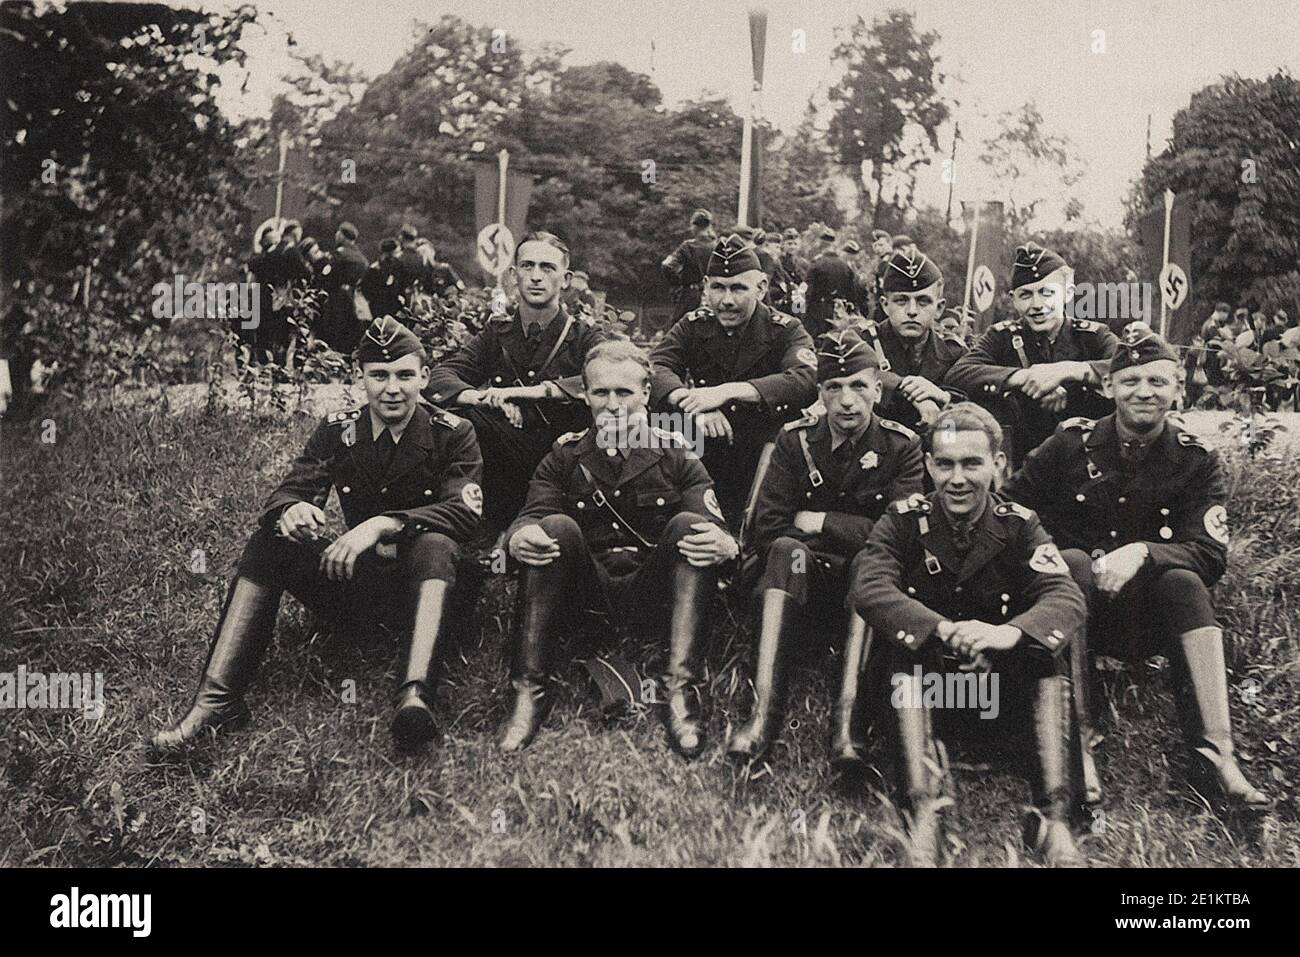 Un groupe de personnes de l'Allemand Schutzstaffel (SS) après l'anniversaire de fête parti nazi. Le temps d'avant-guerre. Banque D'Images